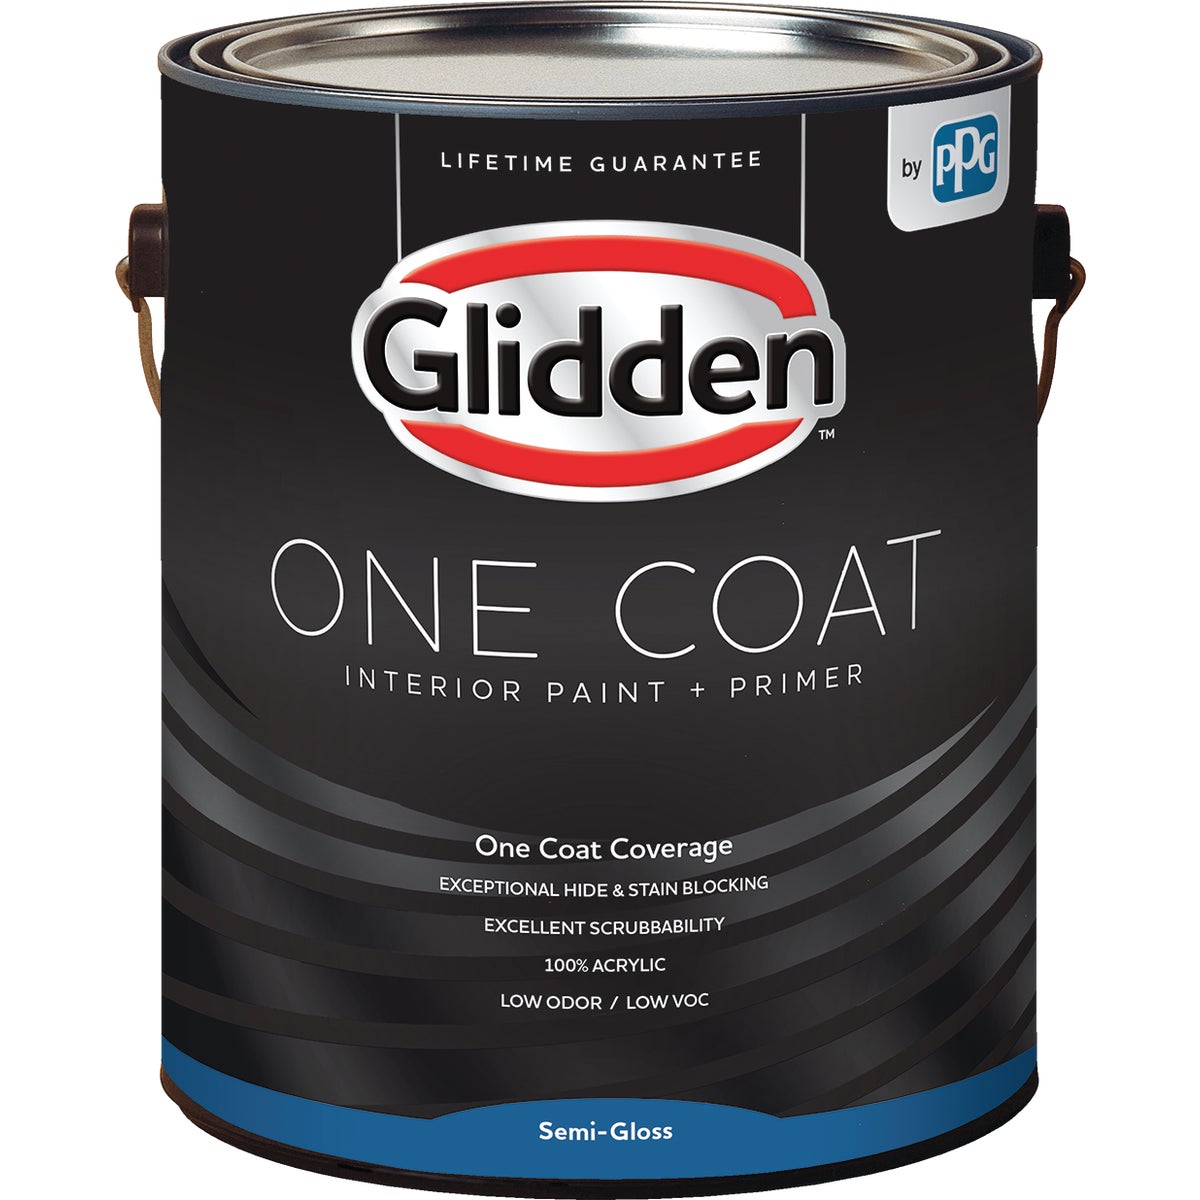 Glidden One Coat Interior Paint + Primer Semi-Gloss White Pastel Base 1 Gallon